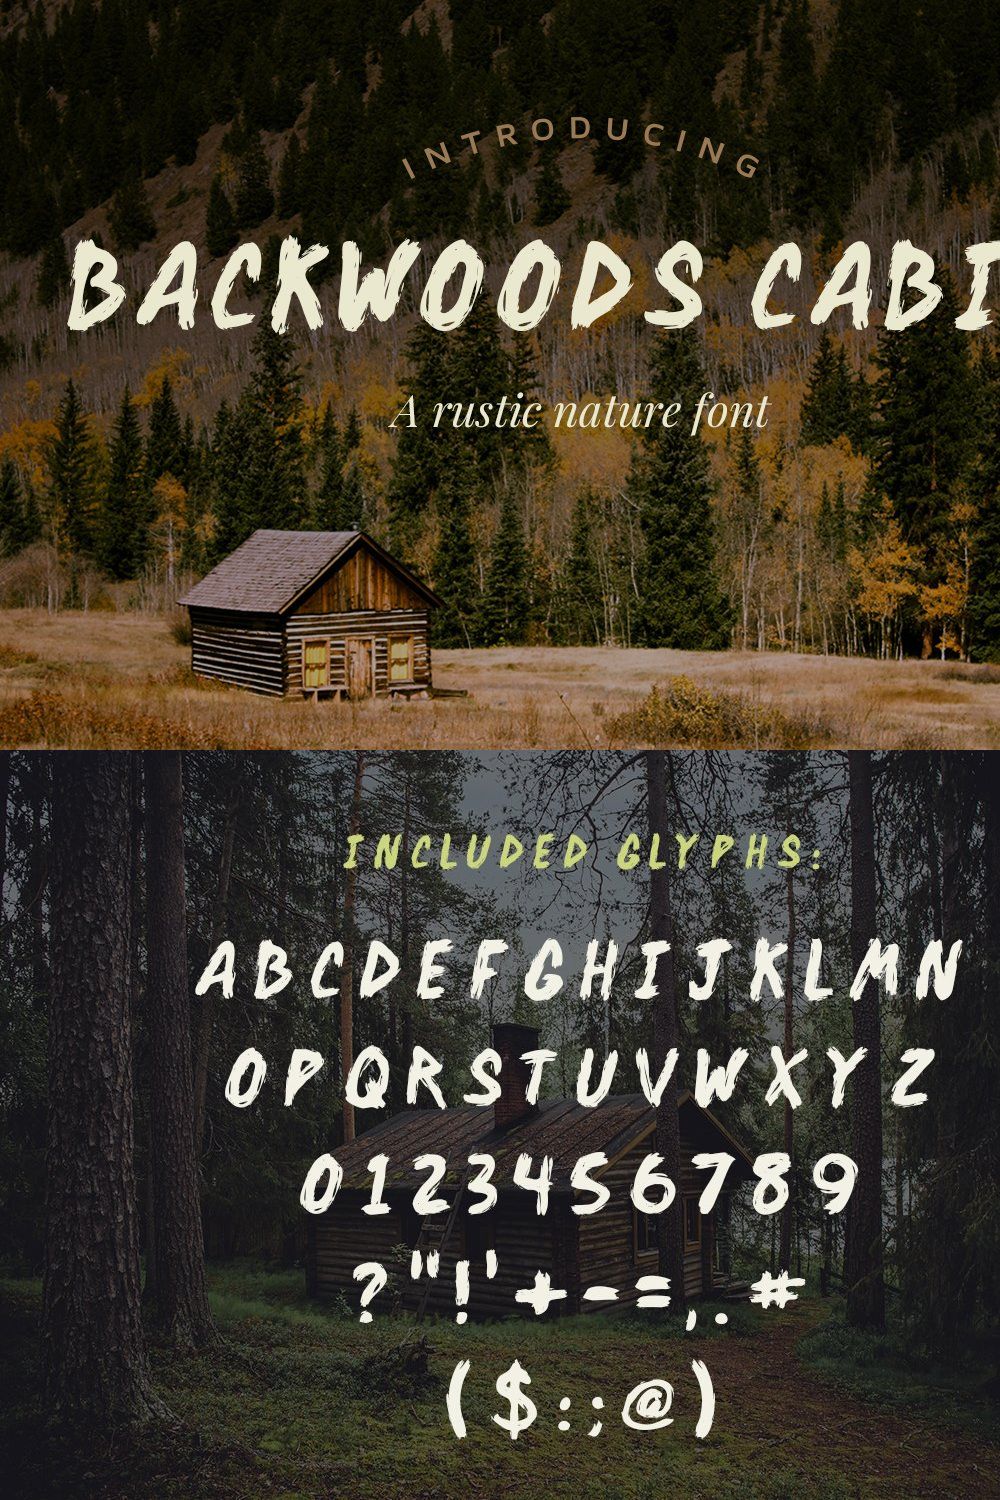 Backwoods Cabin Font pinterest preview image.